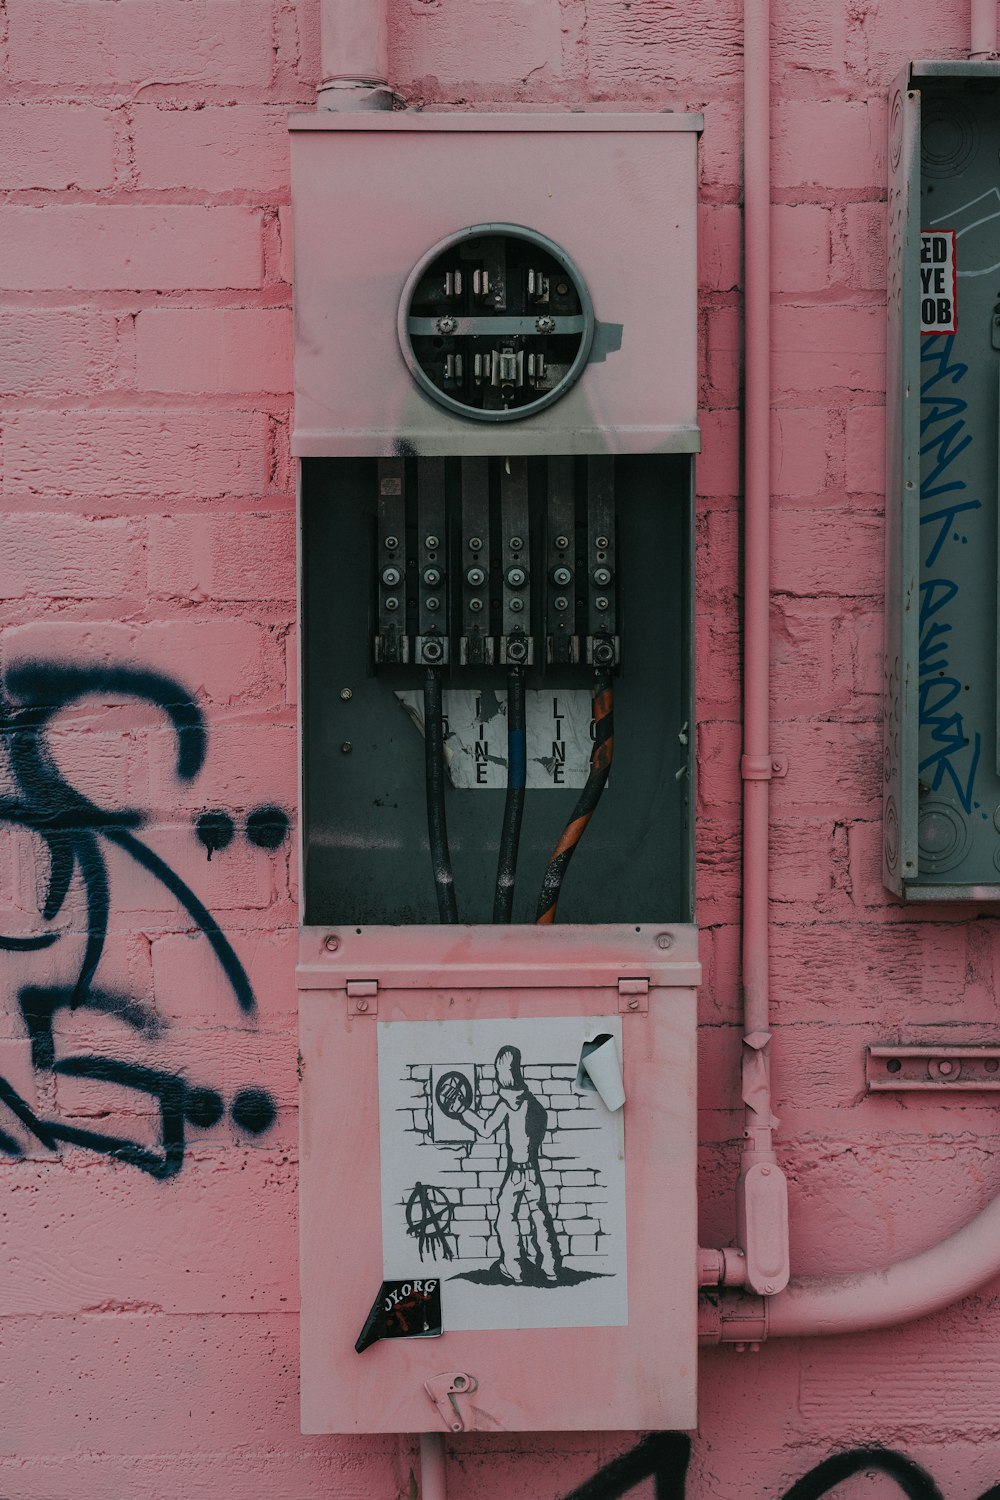 Photographie d’un tableau de distribution avec un autocollant graffiti